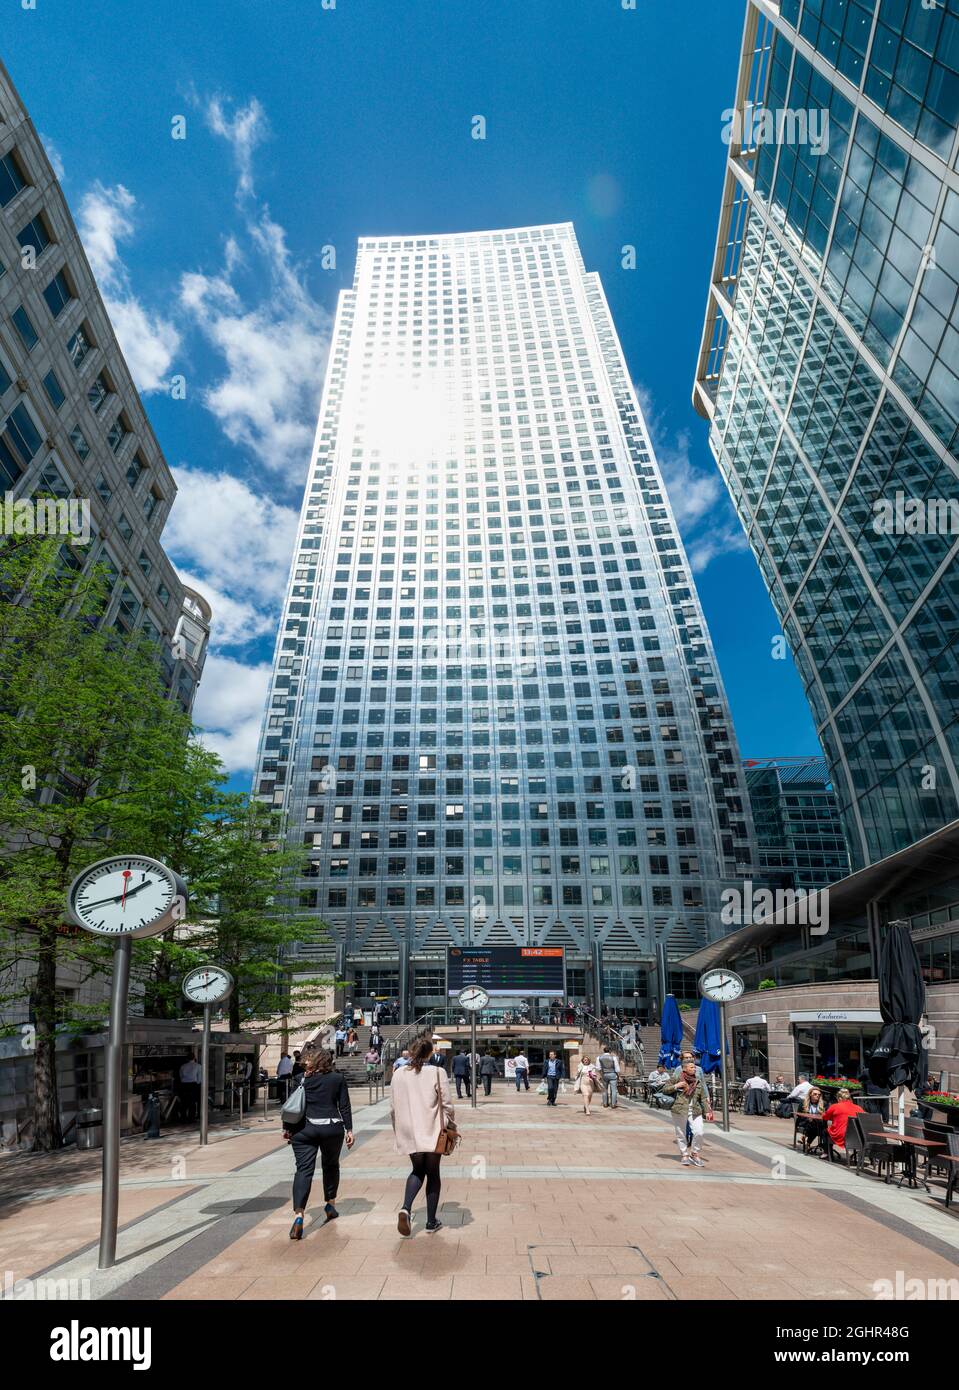 Bâtiment de grande hauteur à One Canada Square, Canary Wharf, Londres, Angleterre, Royaume-Uni Banque D'Images